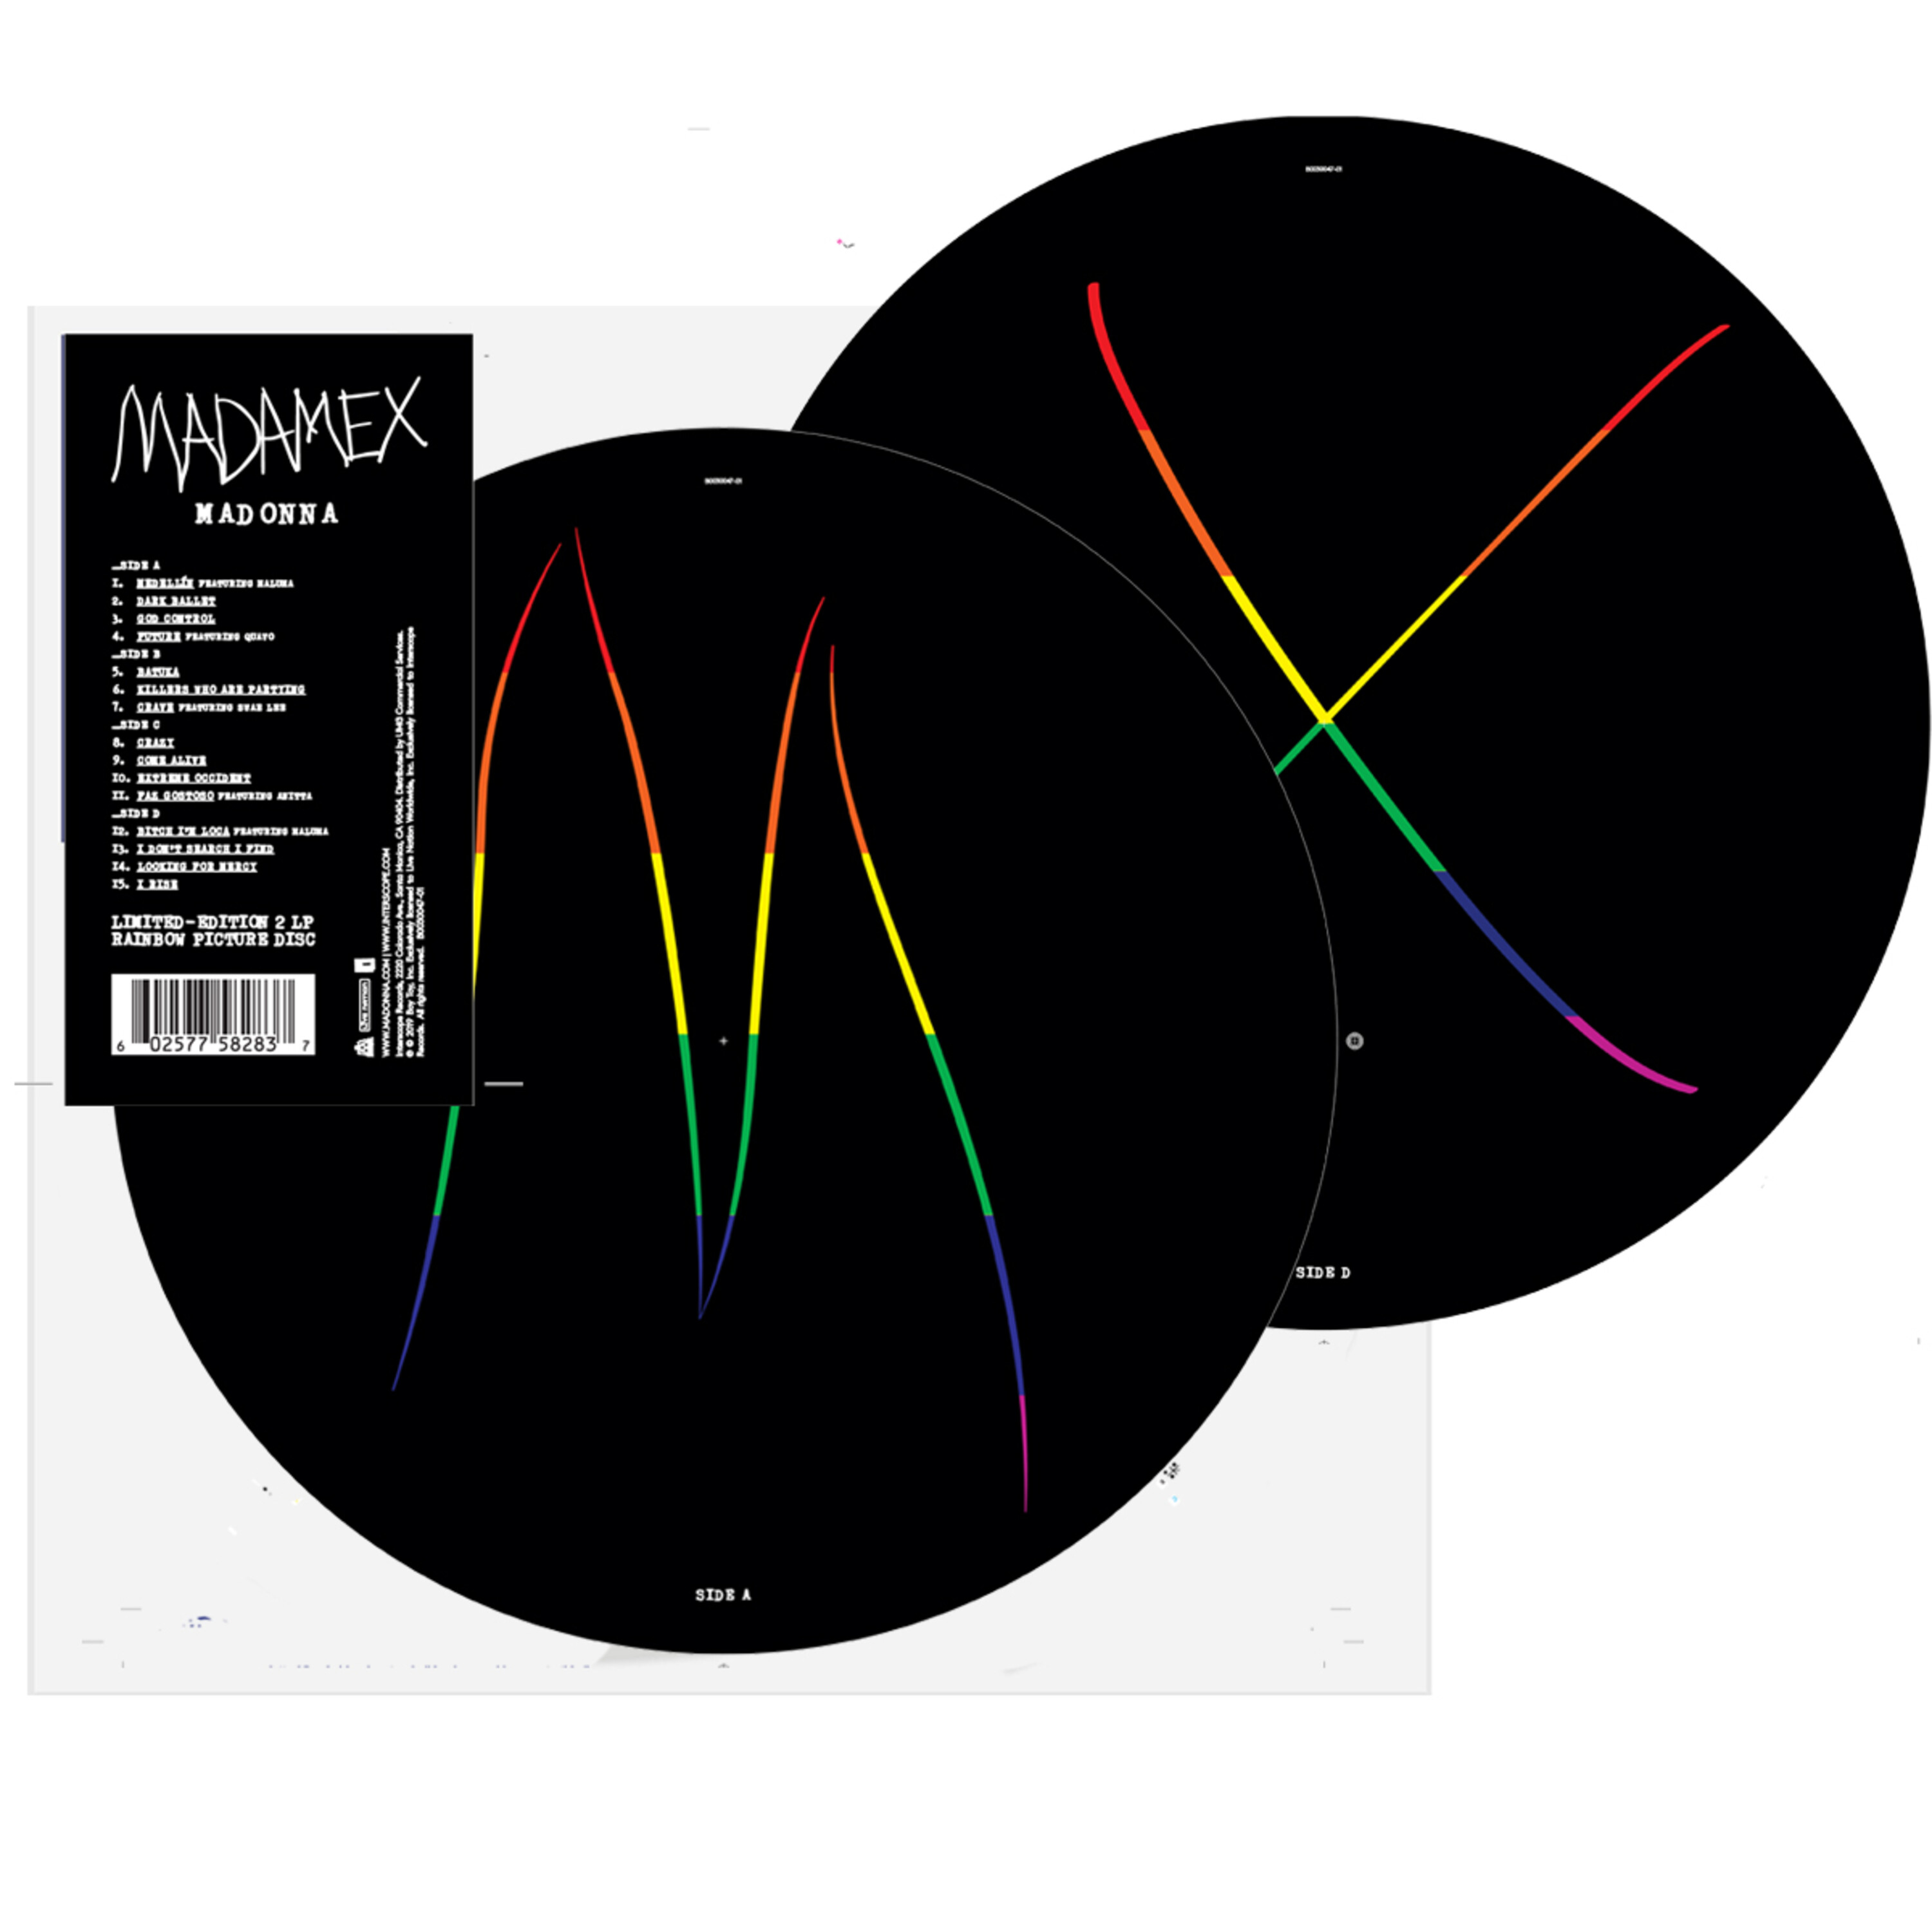 海外 正規品 限定盤 LPレコード マドンナ マダムX ピクヂャーディスク2 